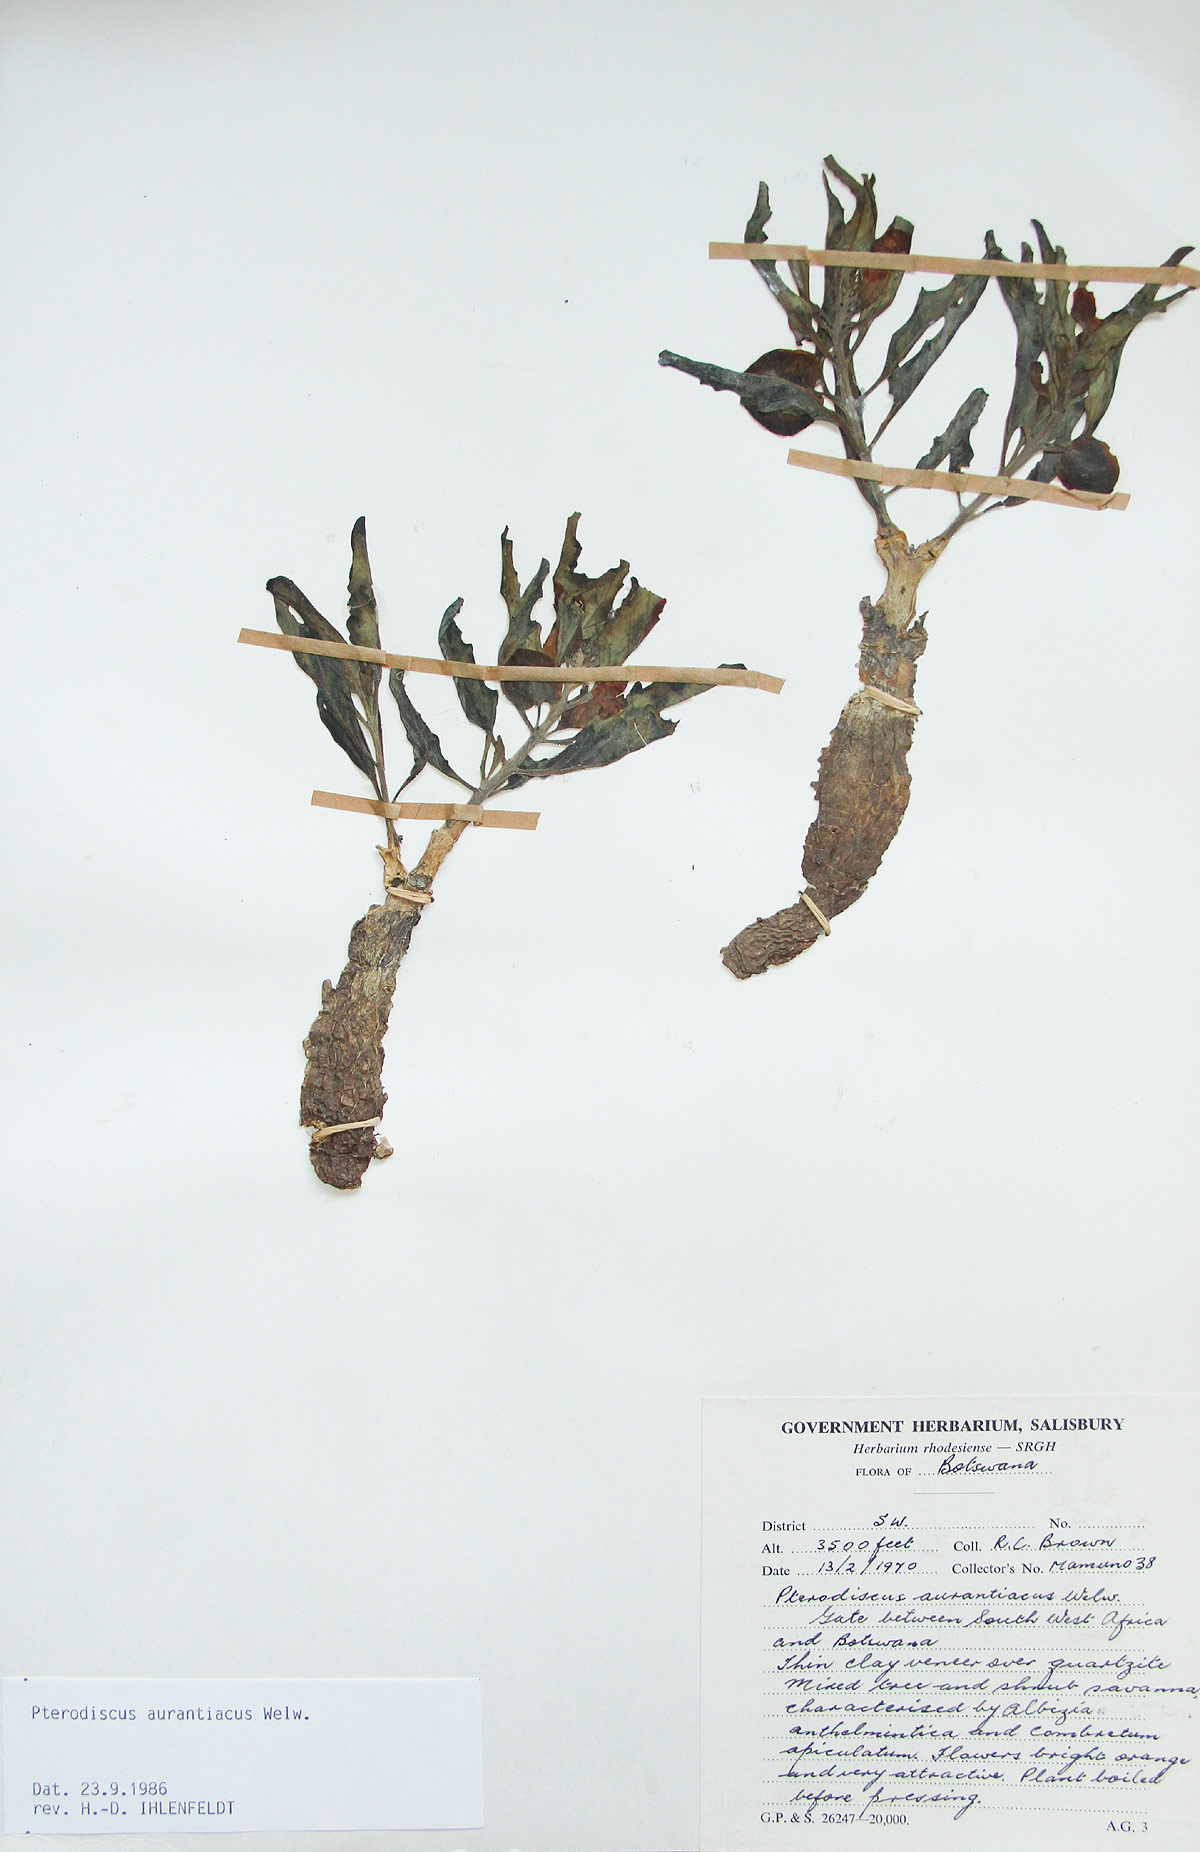 Pterodiscus aurantiacus